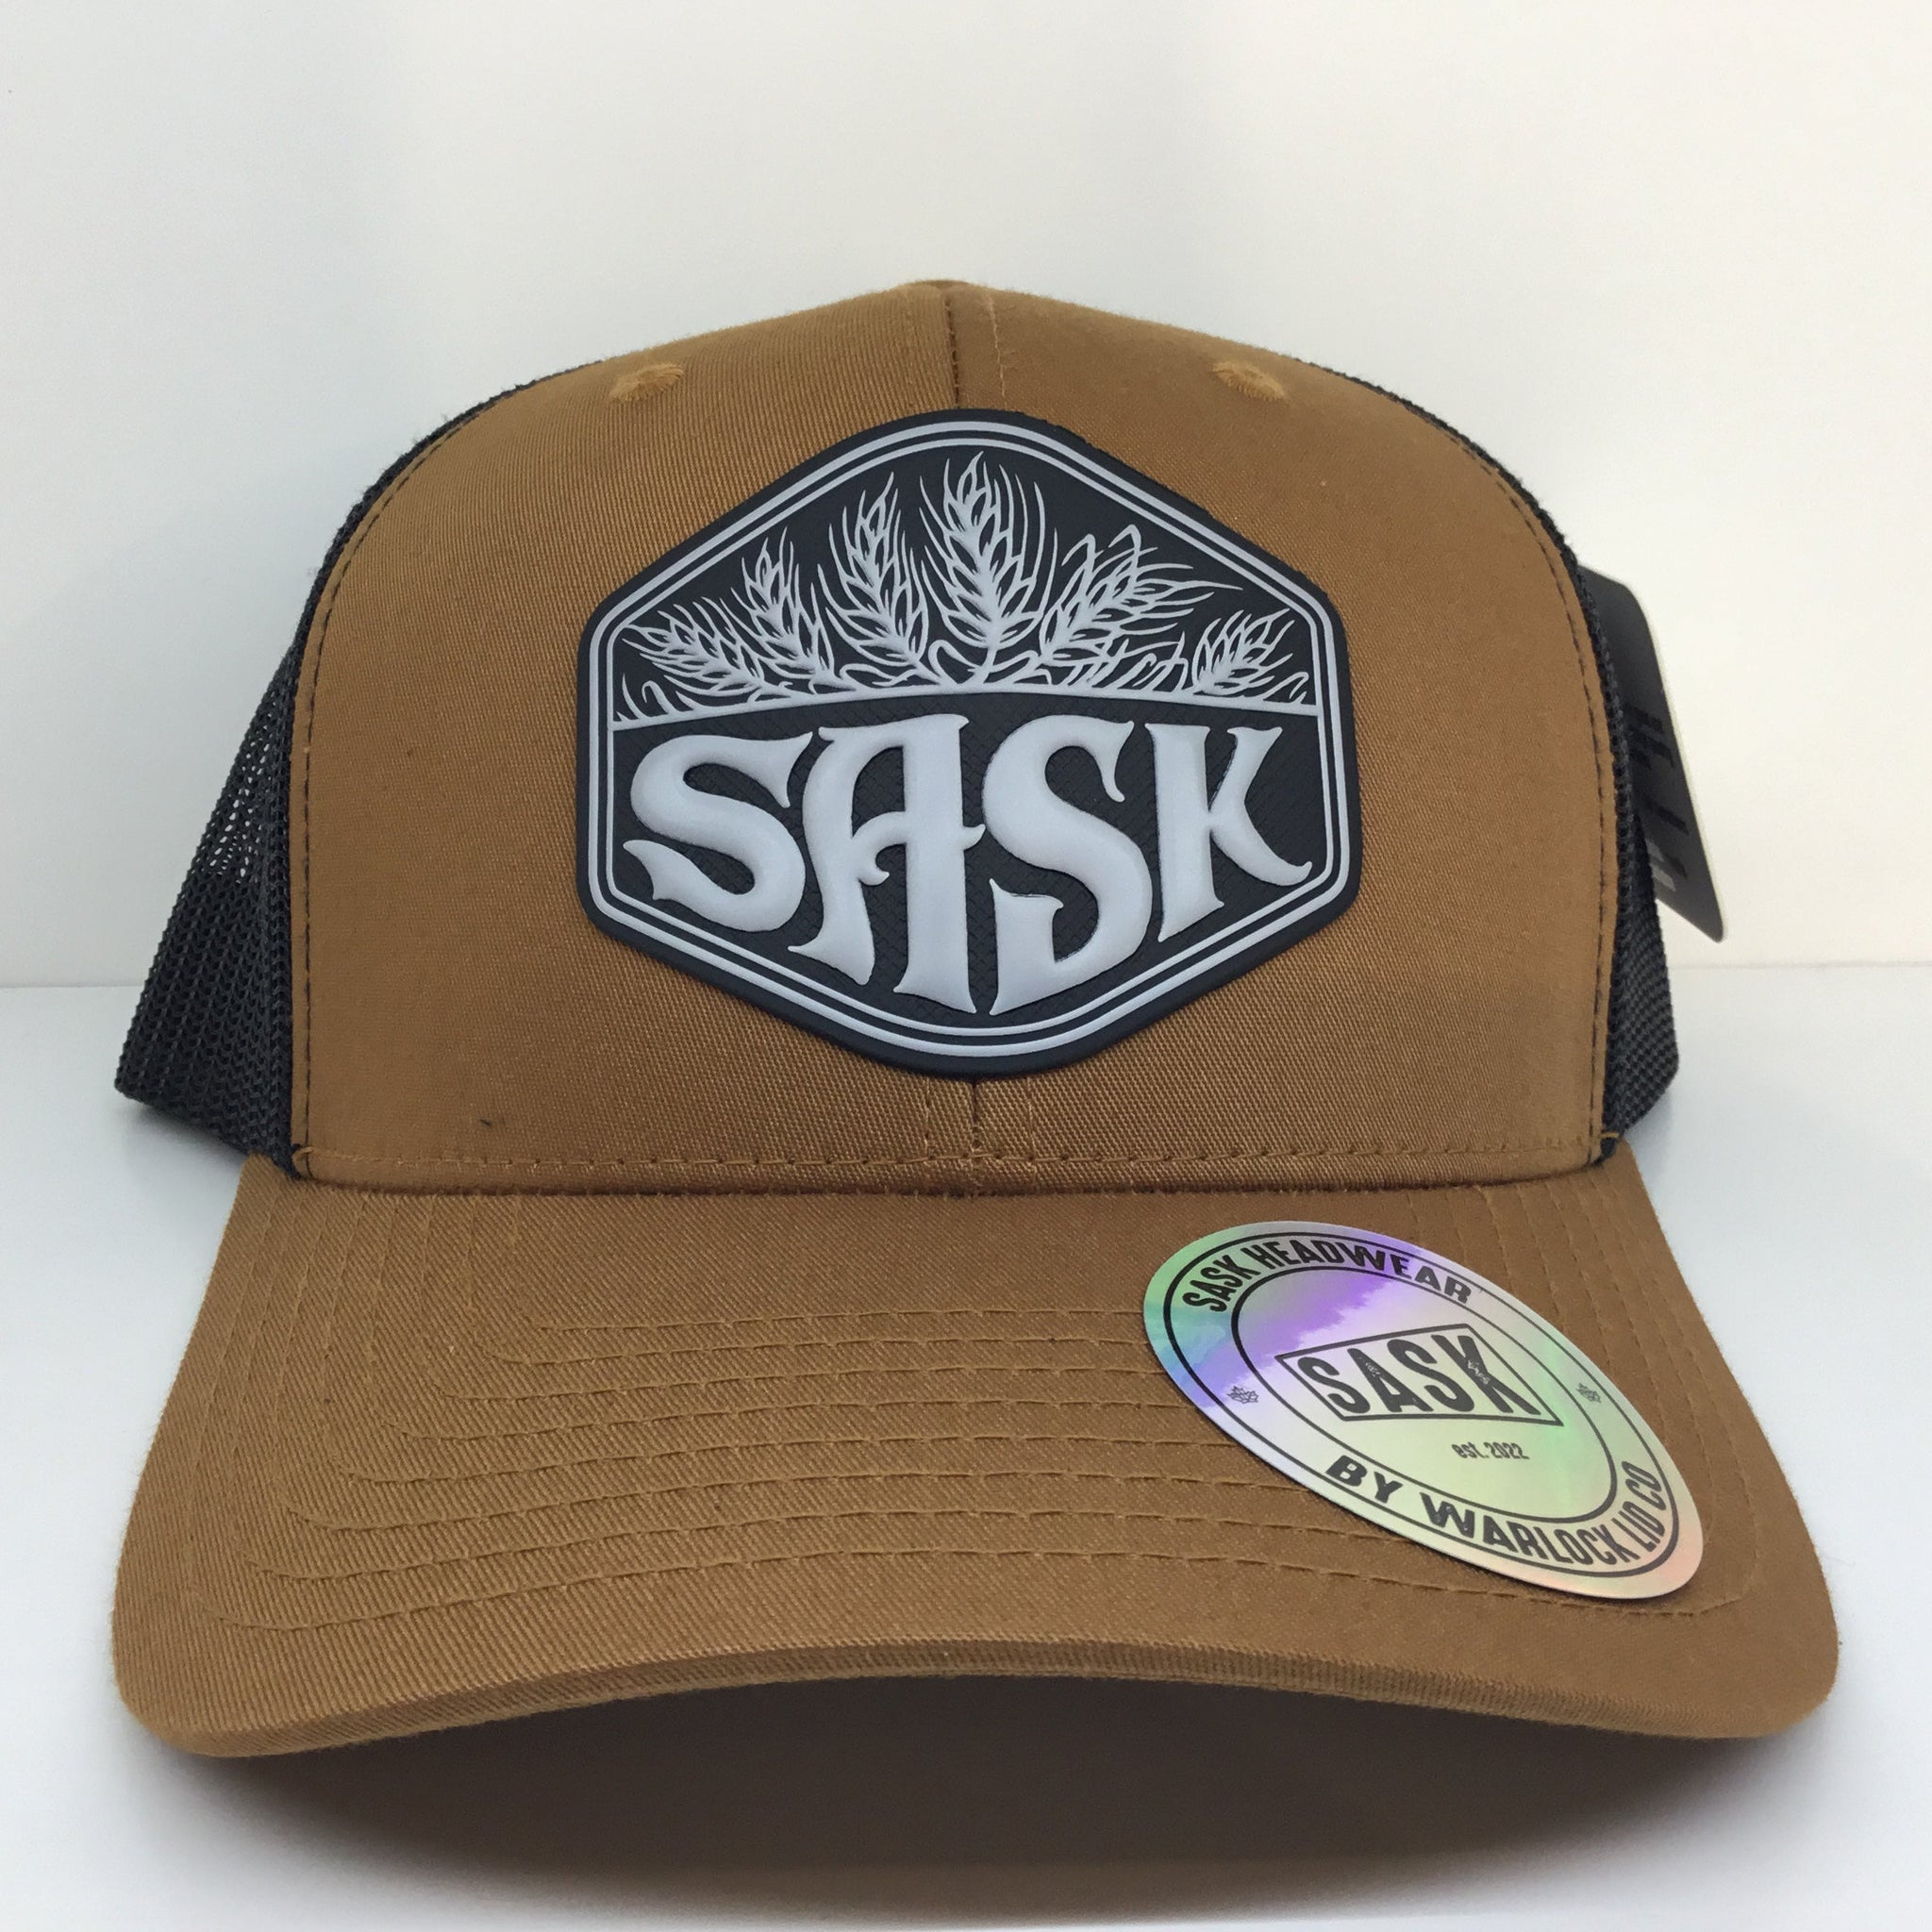 Sask Harvest Hat | Warlock Lid Co | Adjustable Snapback